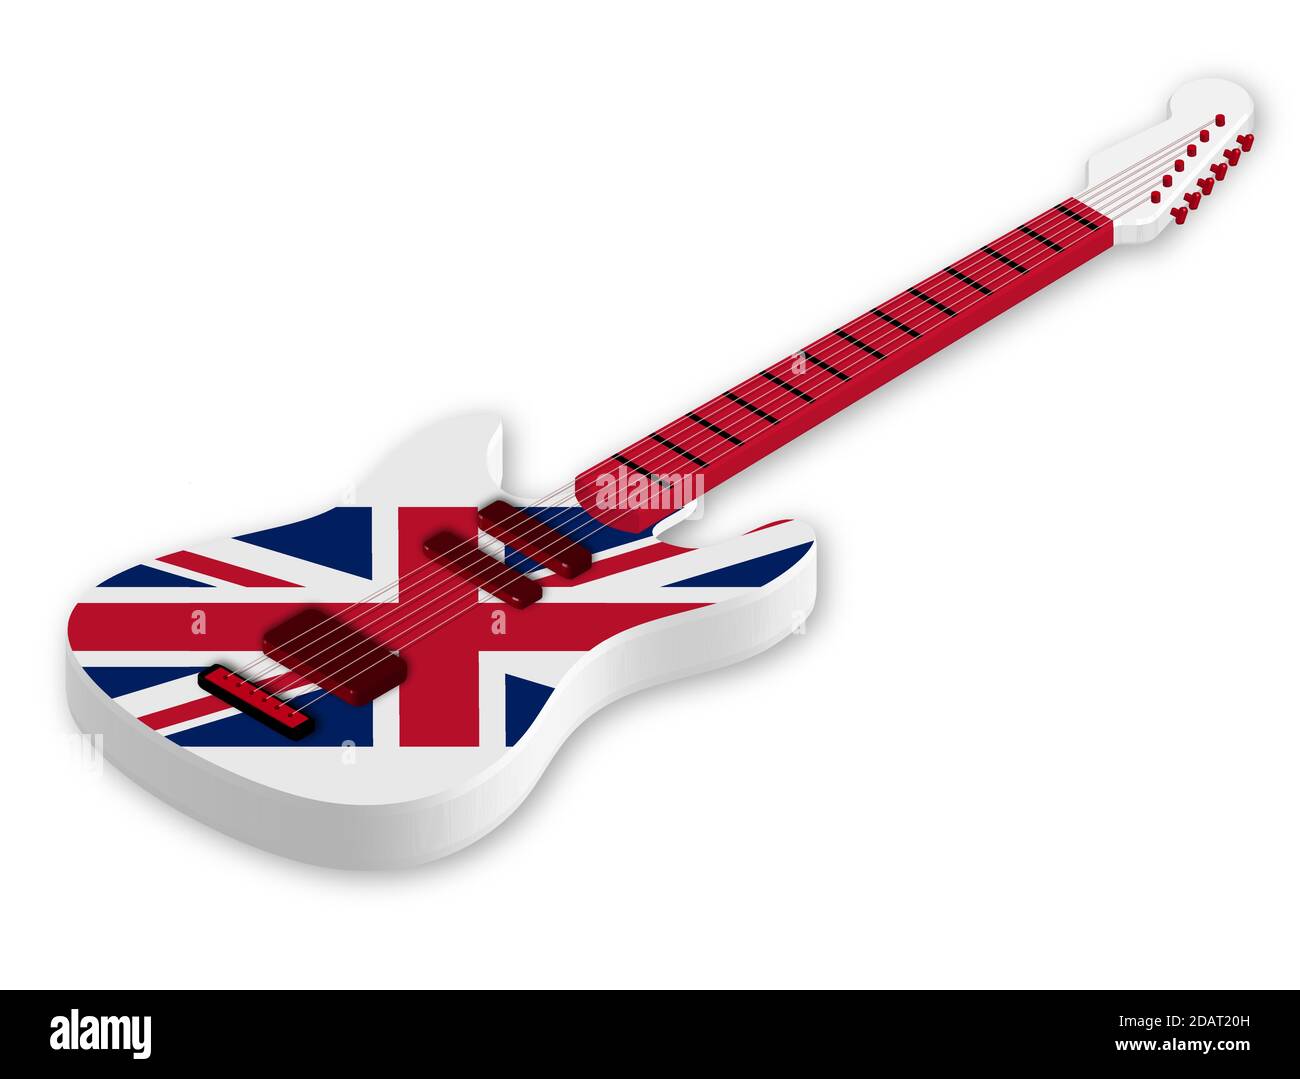 Motif Union Jack Drapeau Anglais bleu et rouge et blanc et sangle de guitare 